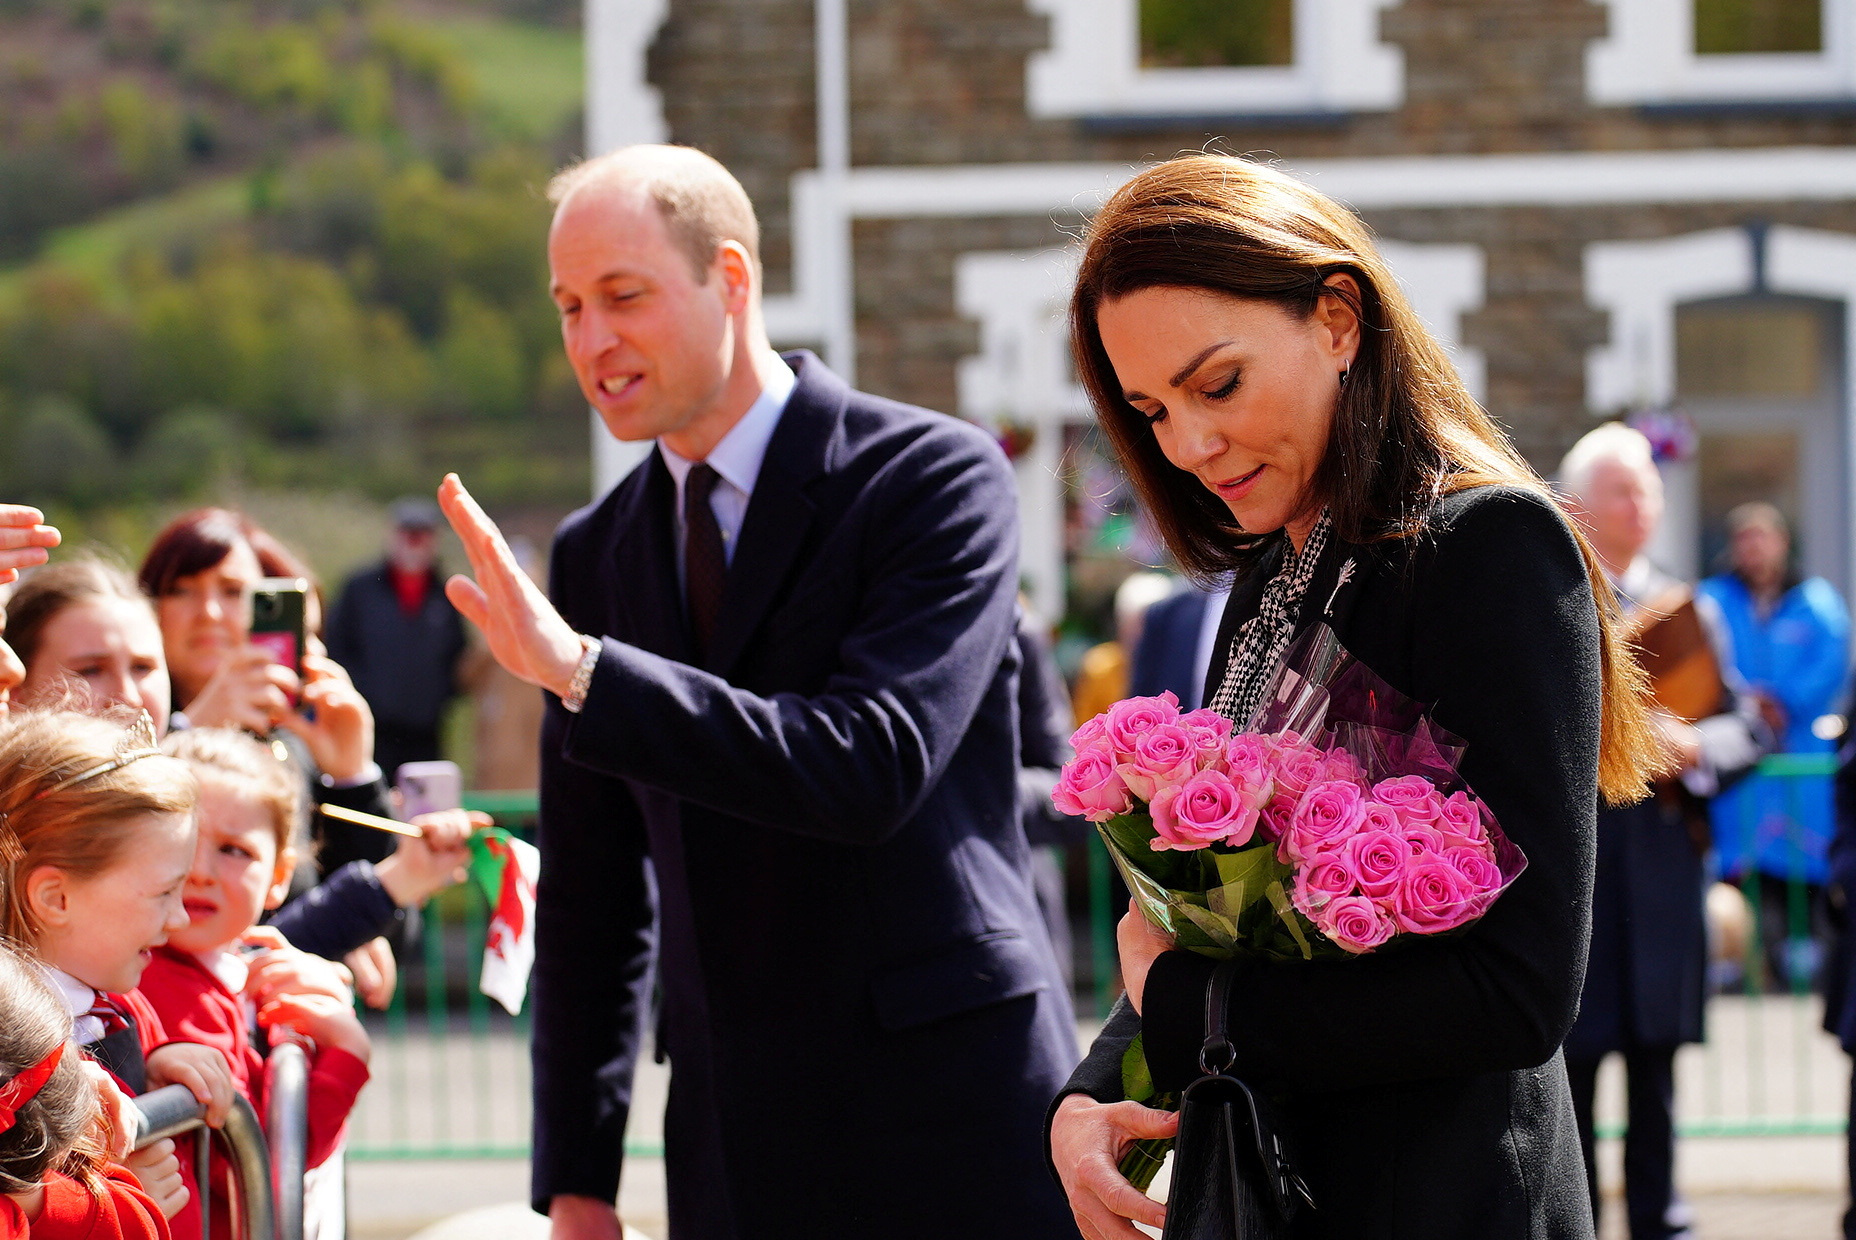 El príncipe William, príncipe de Gales y Catherine, princesa de Gales, de Gran Bretaña, visitan el jardín conmemorativo de Aberfan. Ben Birchall/Pool vía REUTERS